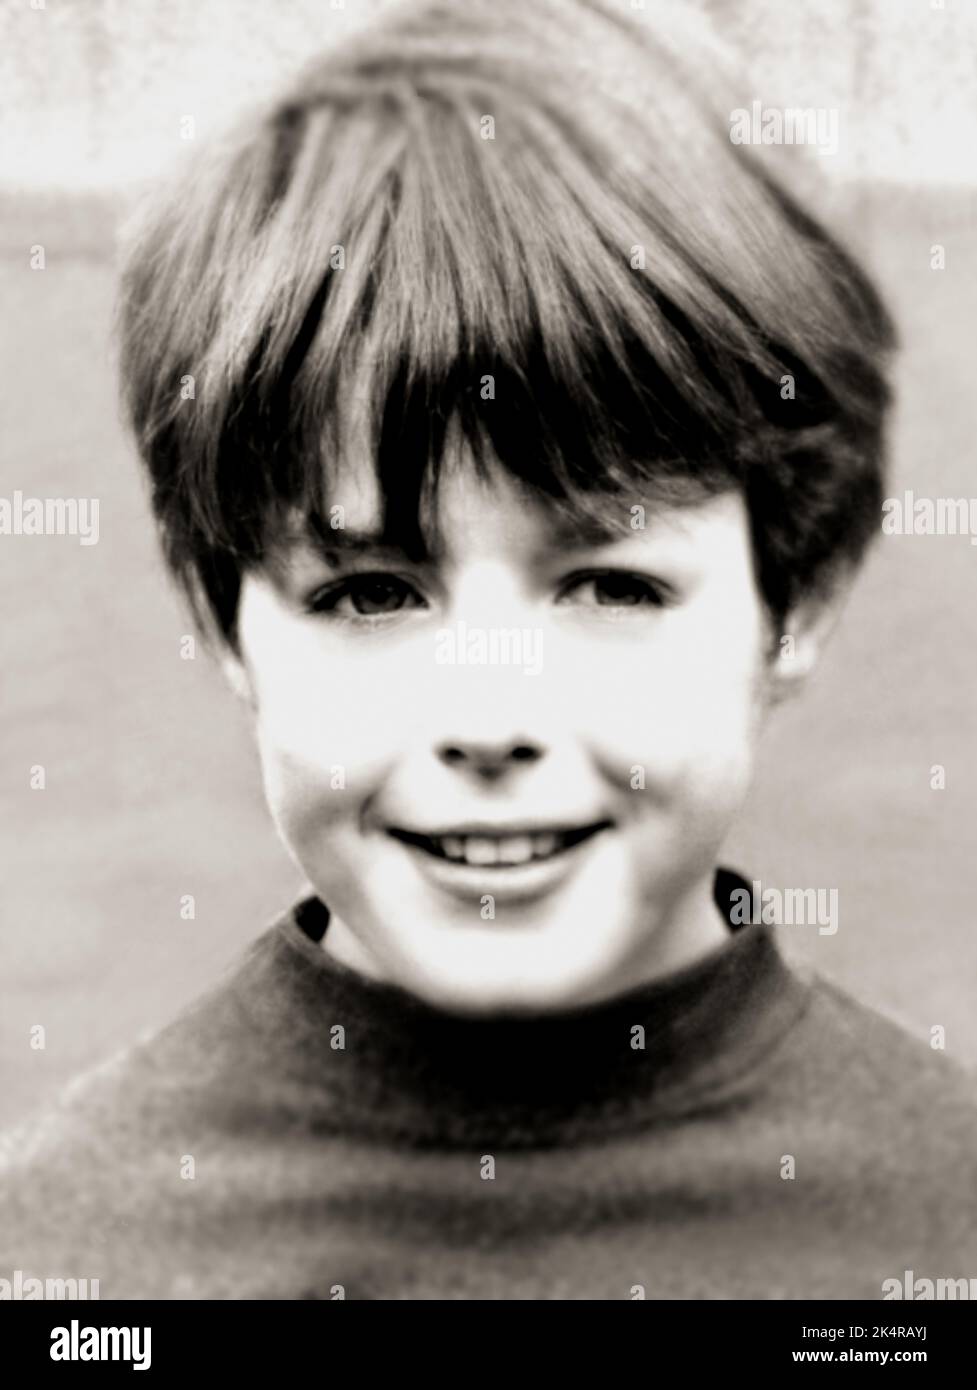 1968 , London , GROSSBRITANNIEN : der britische Schauspieler HUGH GRANT ( geboren am 9. september 1960 ), im Alter von 8 Jahren . Unbekannter Fotograf. - GESCHICHTE - FOTO STORICHE - ATTORE - FILM - KINO - personalità da giovane giovani - da bamino bambini - KIND - KINDER - Persönlichkeit Persönlichkeiten, die jung waren - PORTRÄT - RITRATTO - KINDHEIT - Lächeln - sorriso --- ARCHIVIO GBB Stockfoto